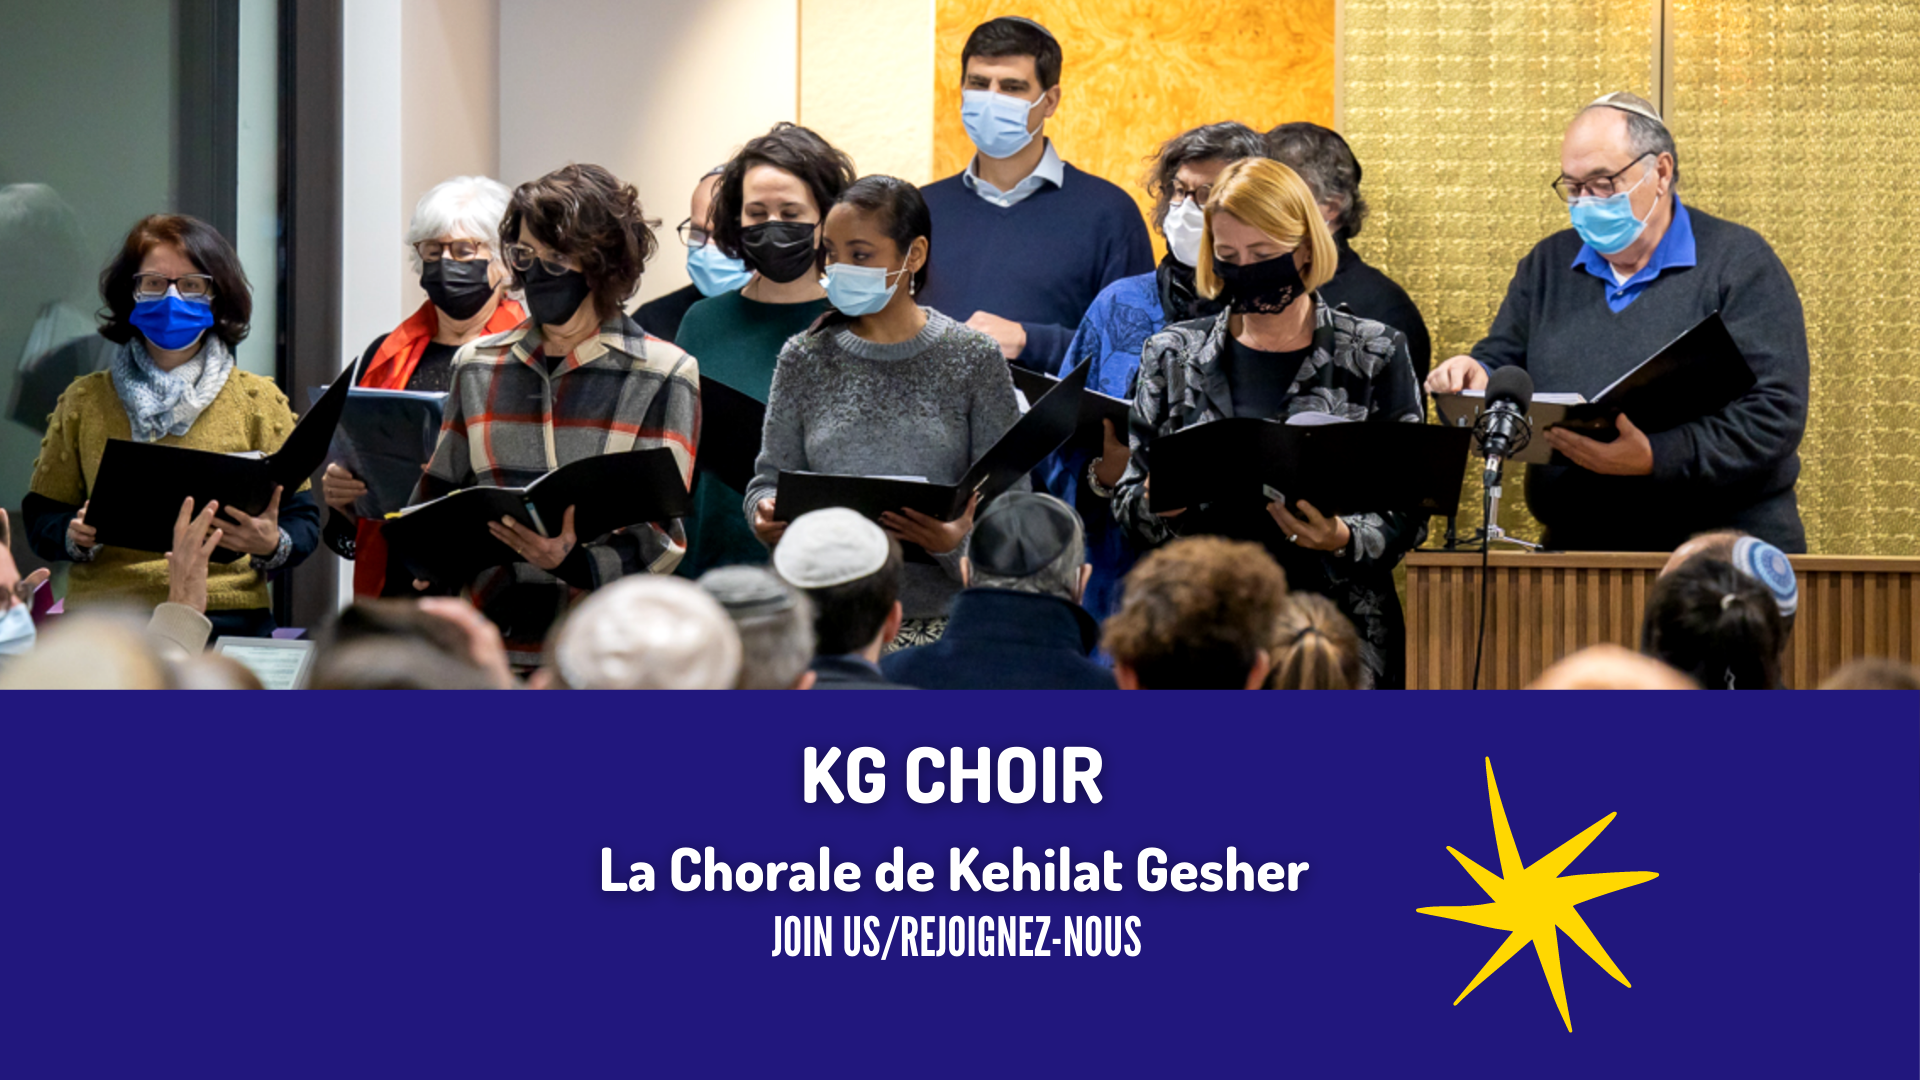 Join KG Choir